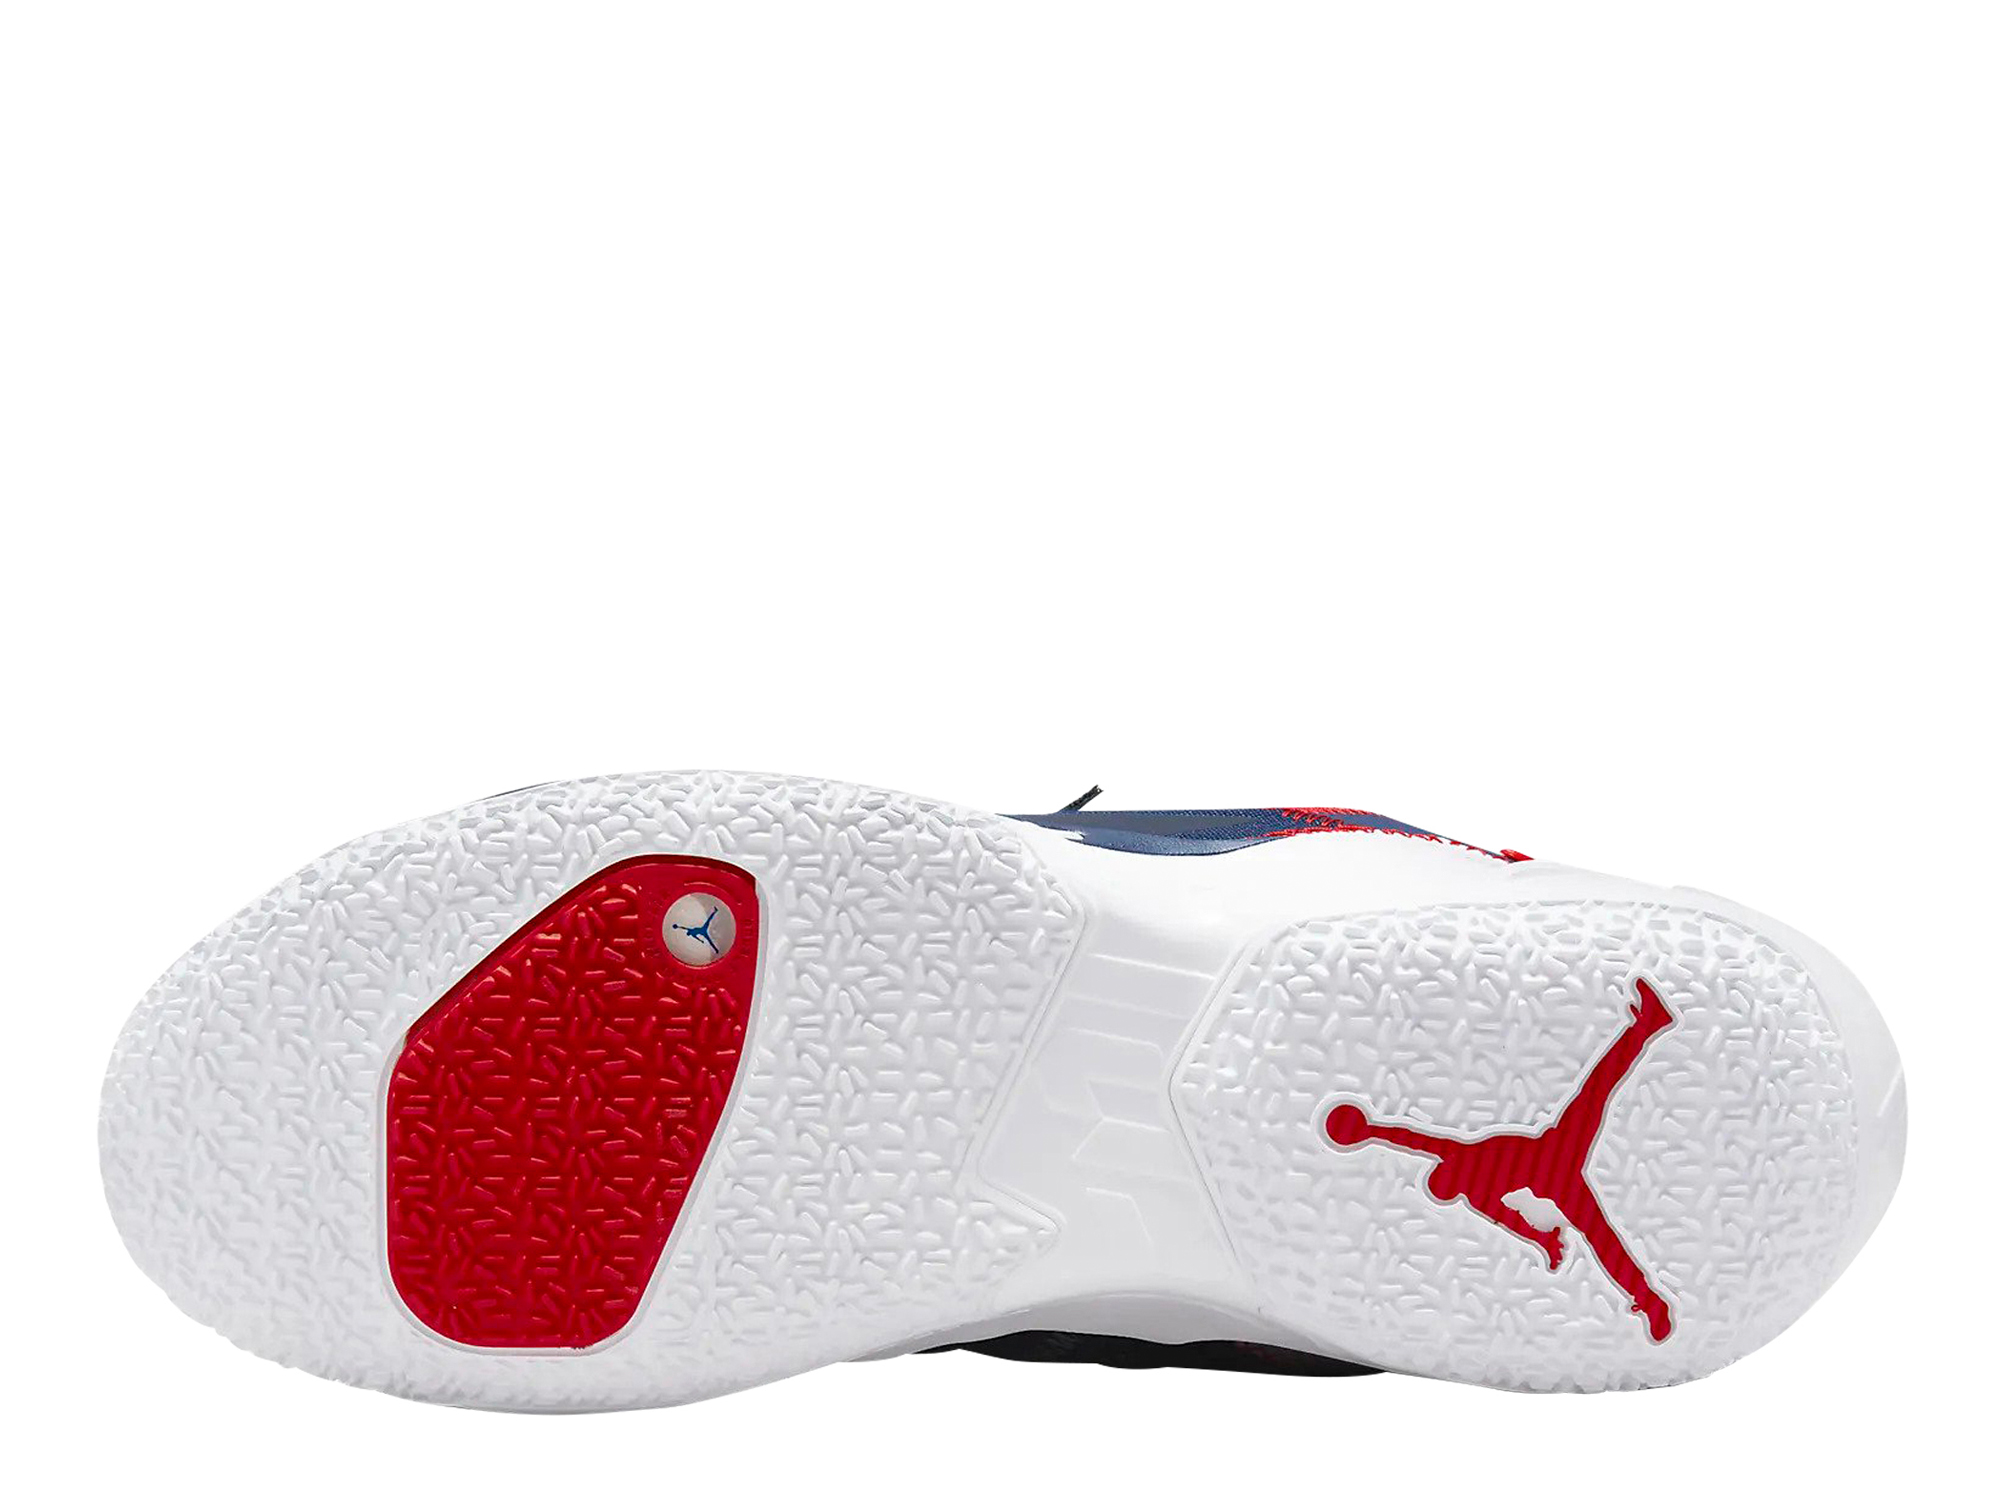 Air Jordan Why Not Zero.4 Herren Basketballschuh